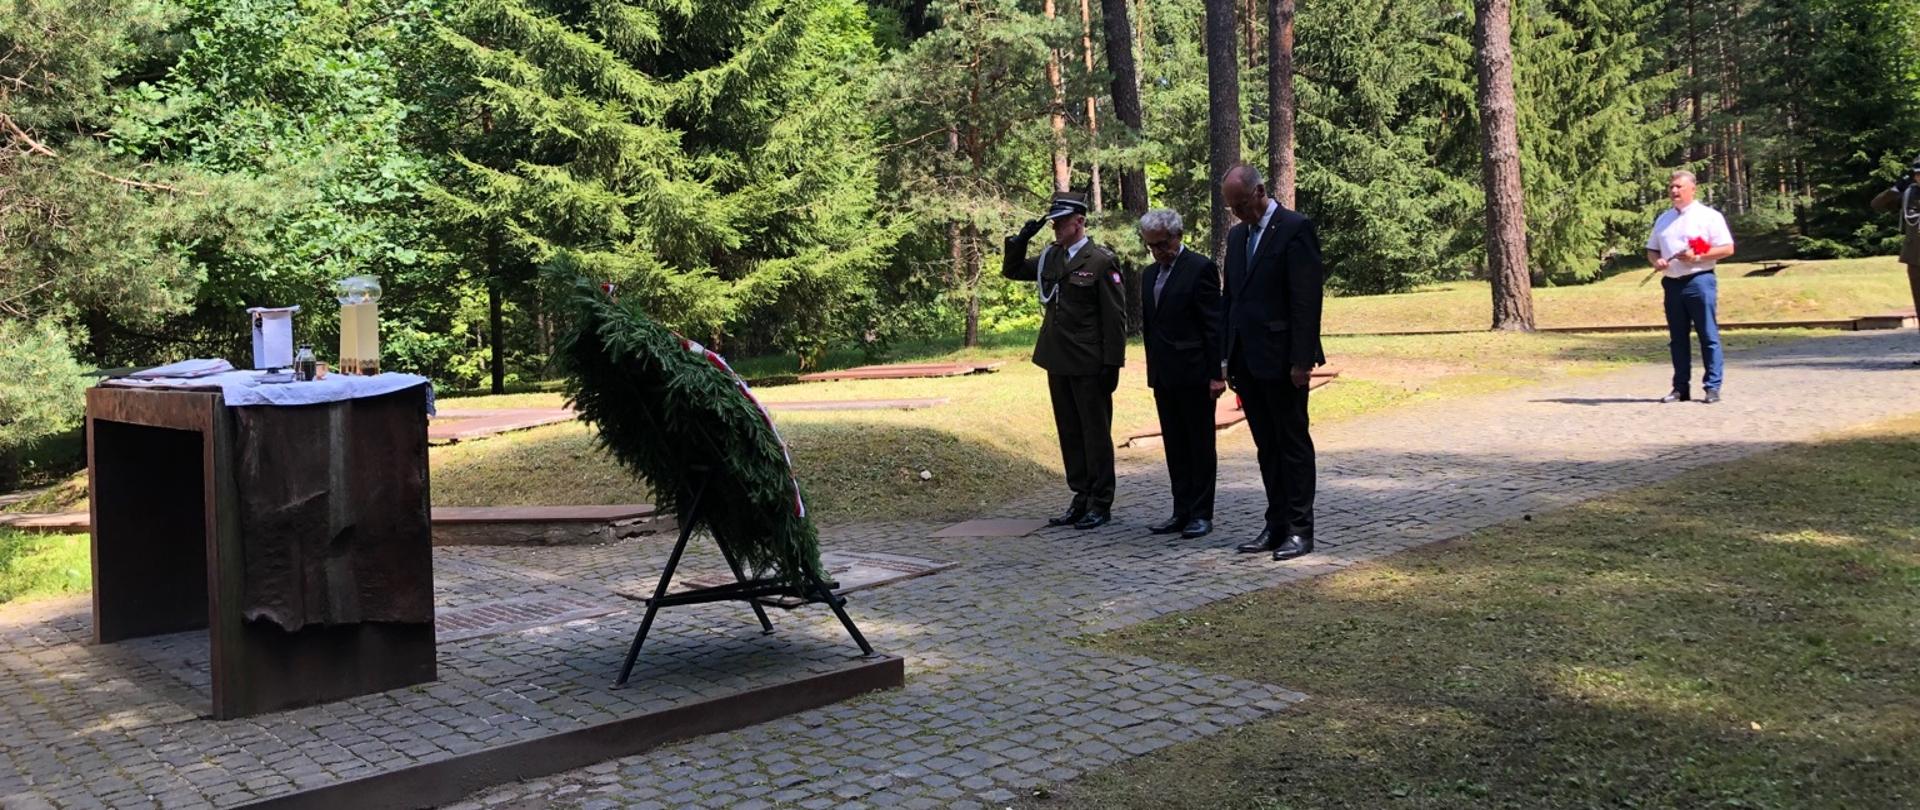 Посол Республики Польша в Москве отметил 20-летие открытия Мемориального комплекса «Катынь»